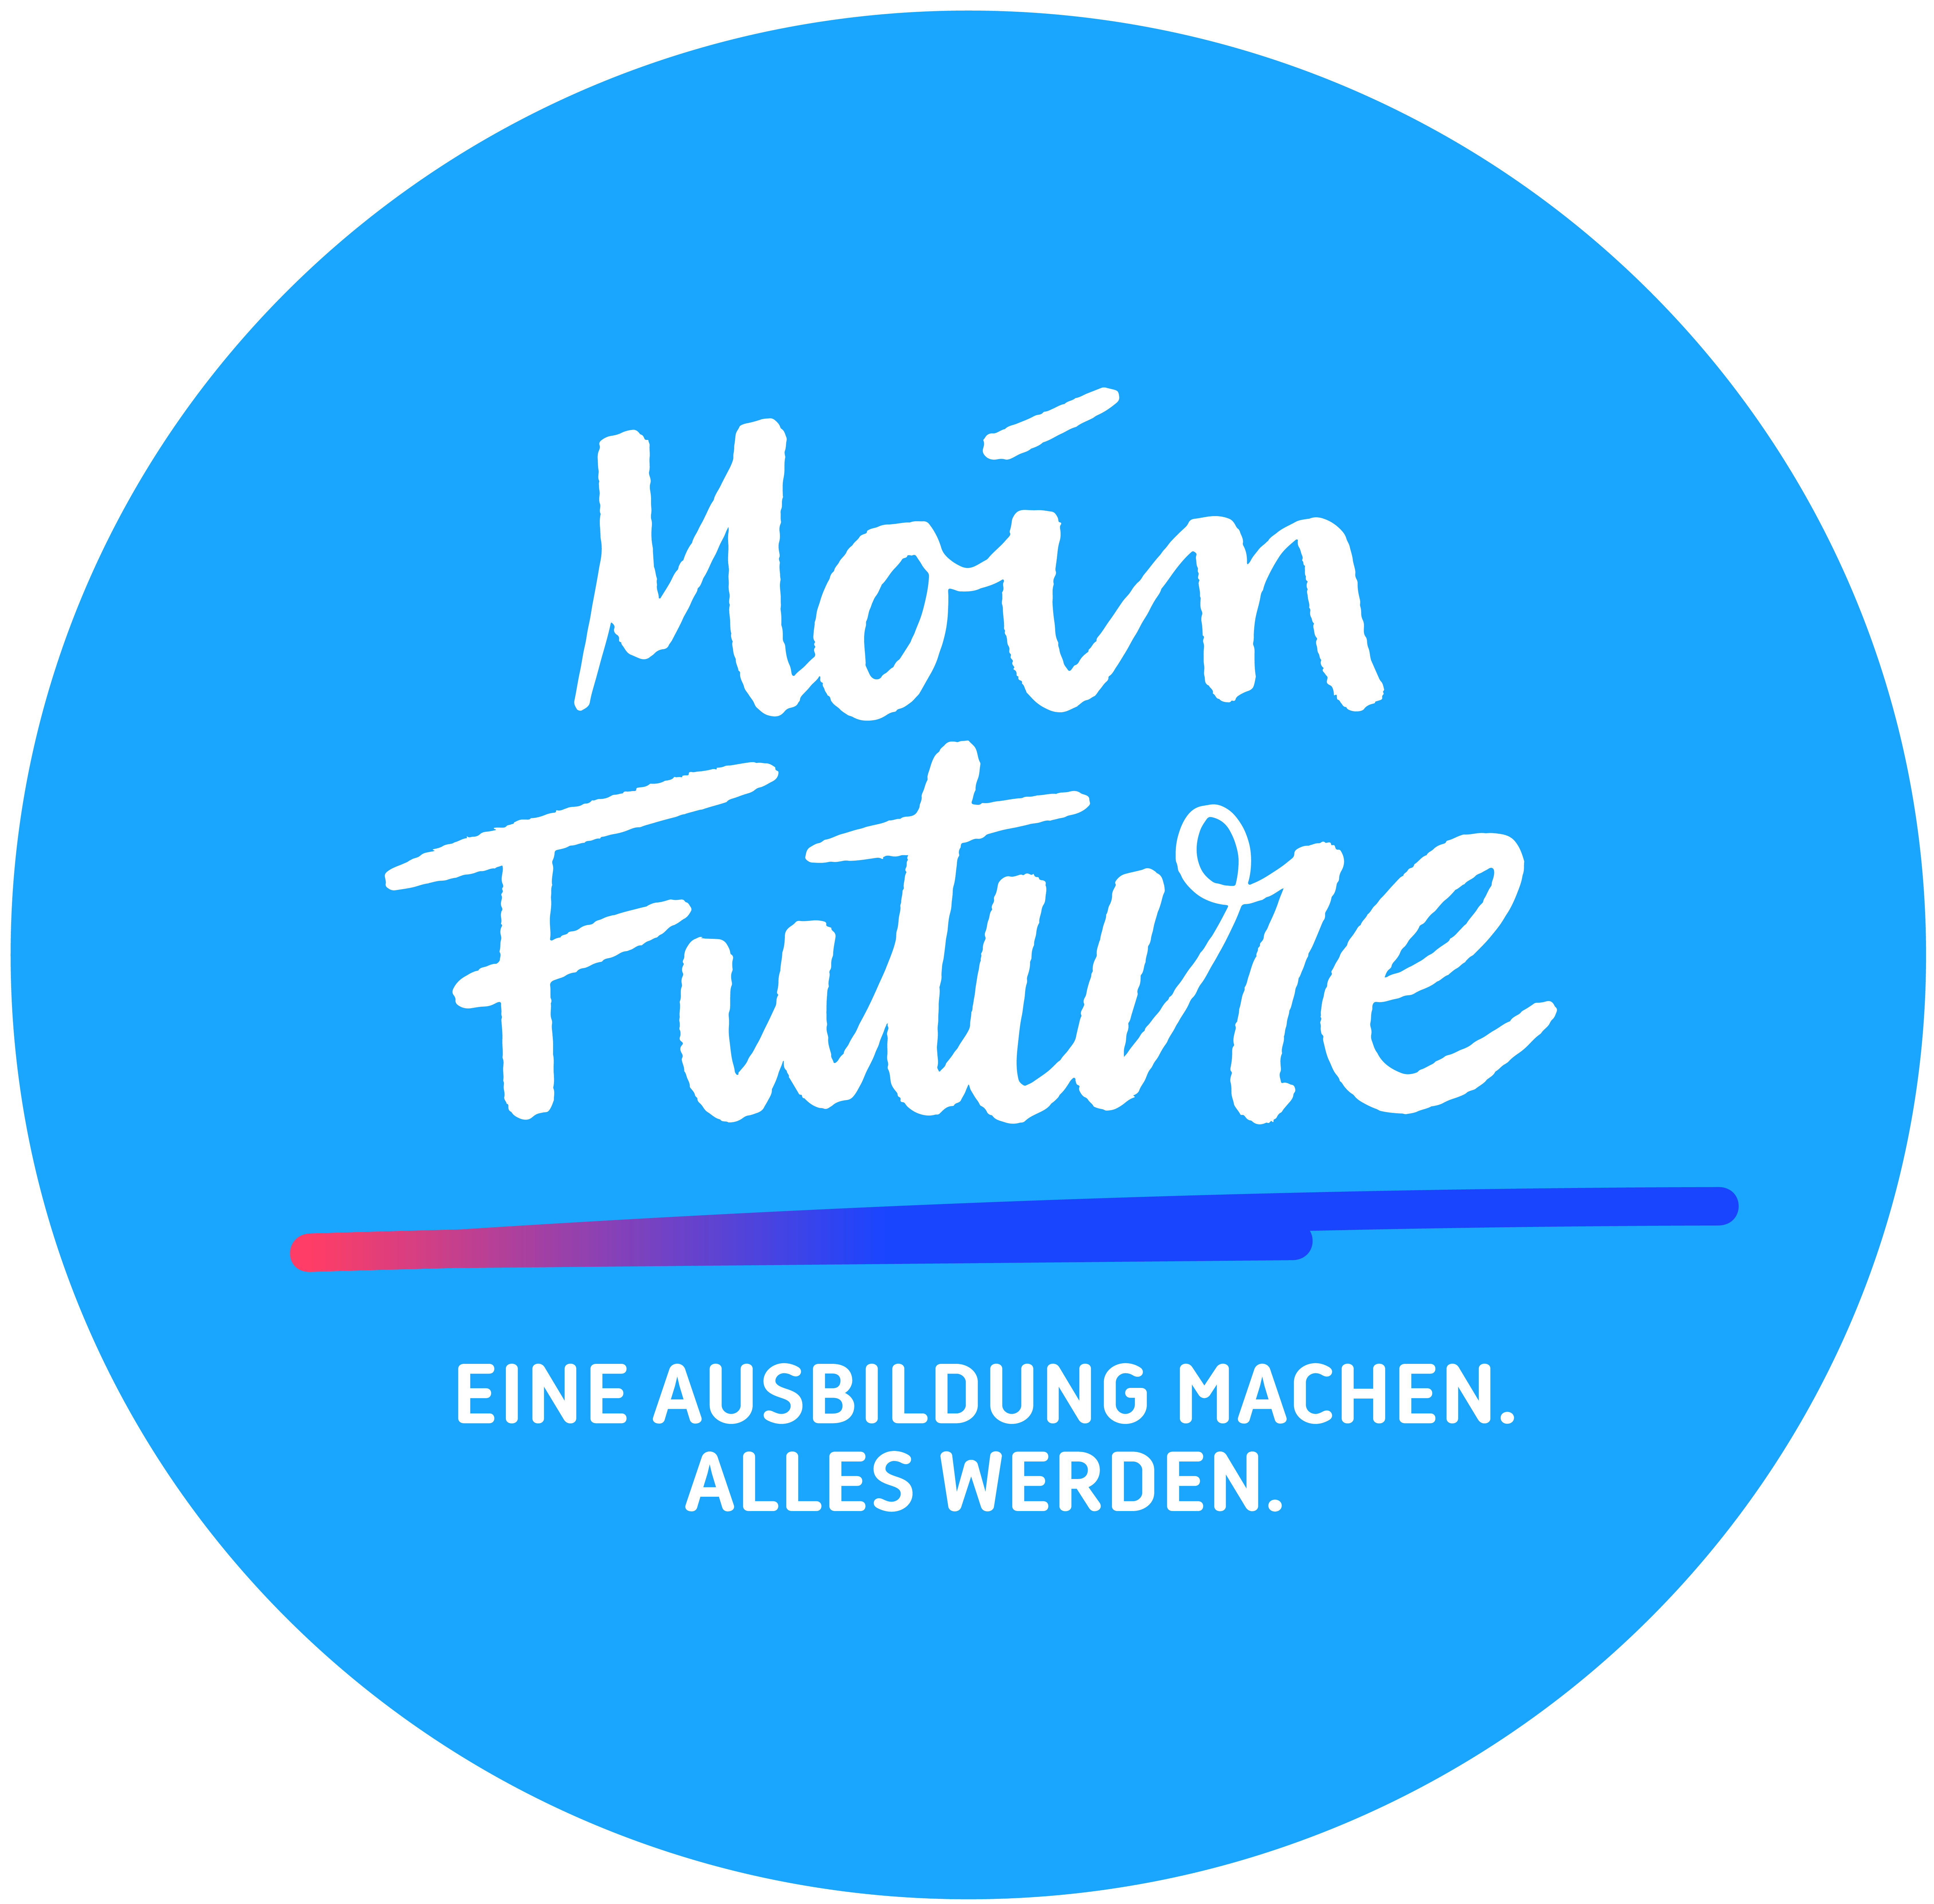 Moin Future 